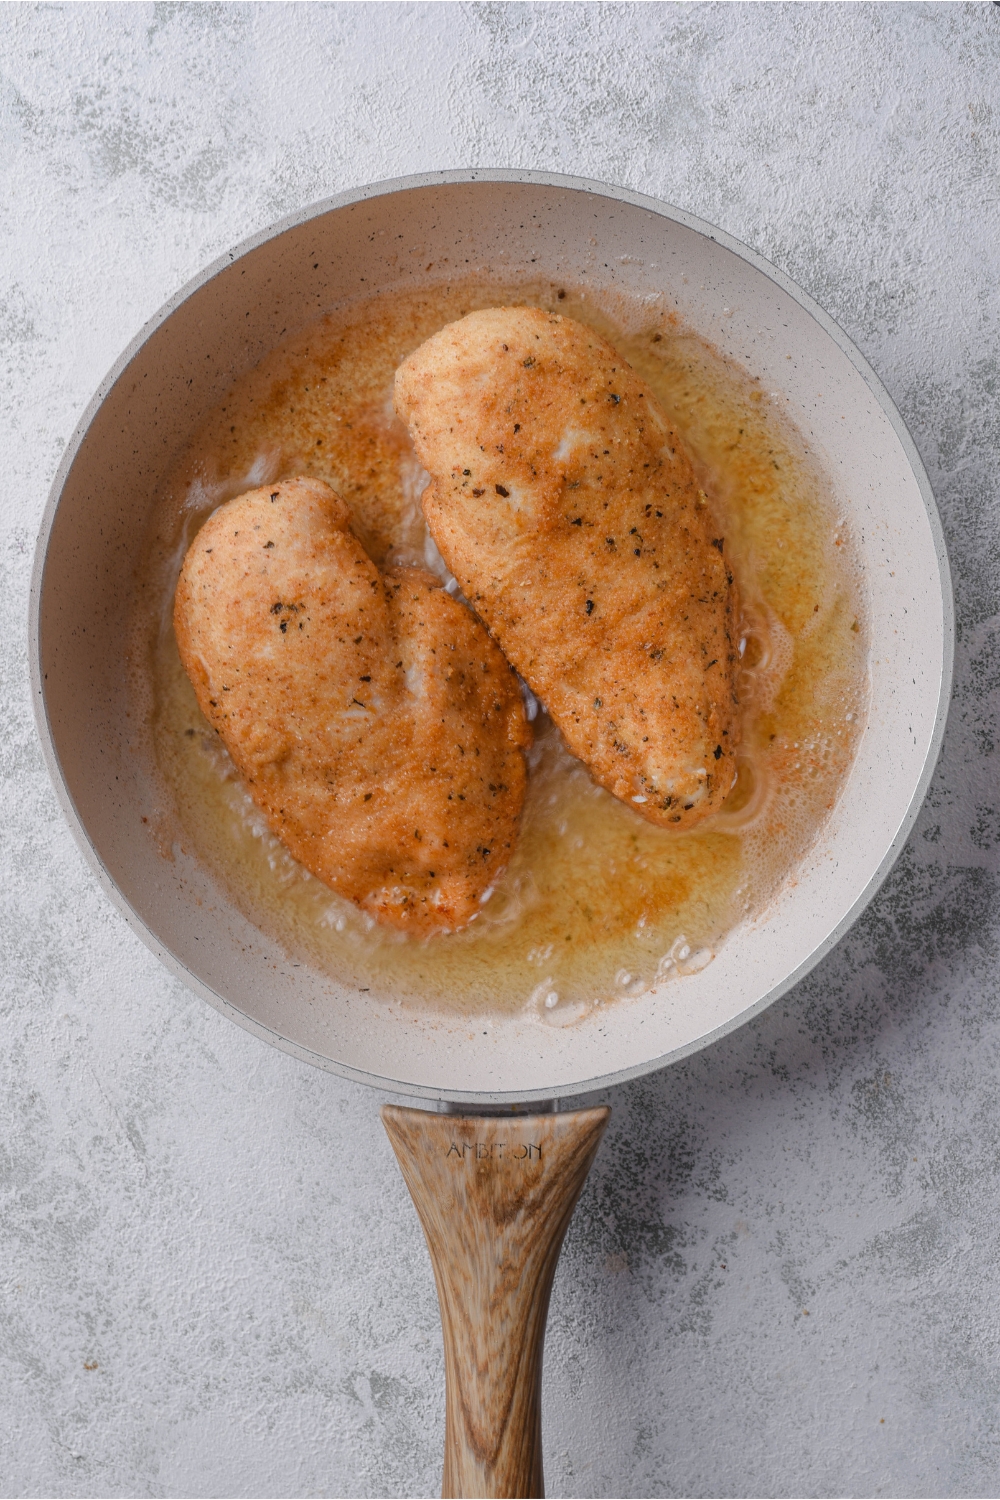 Two seasoned chicken breasts frying in oil in a grey skillet.